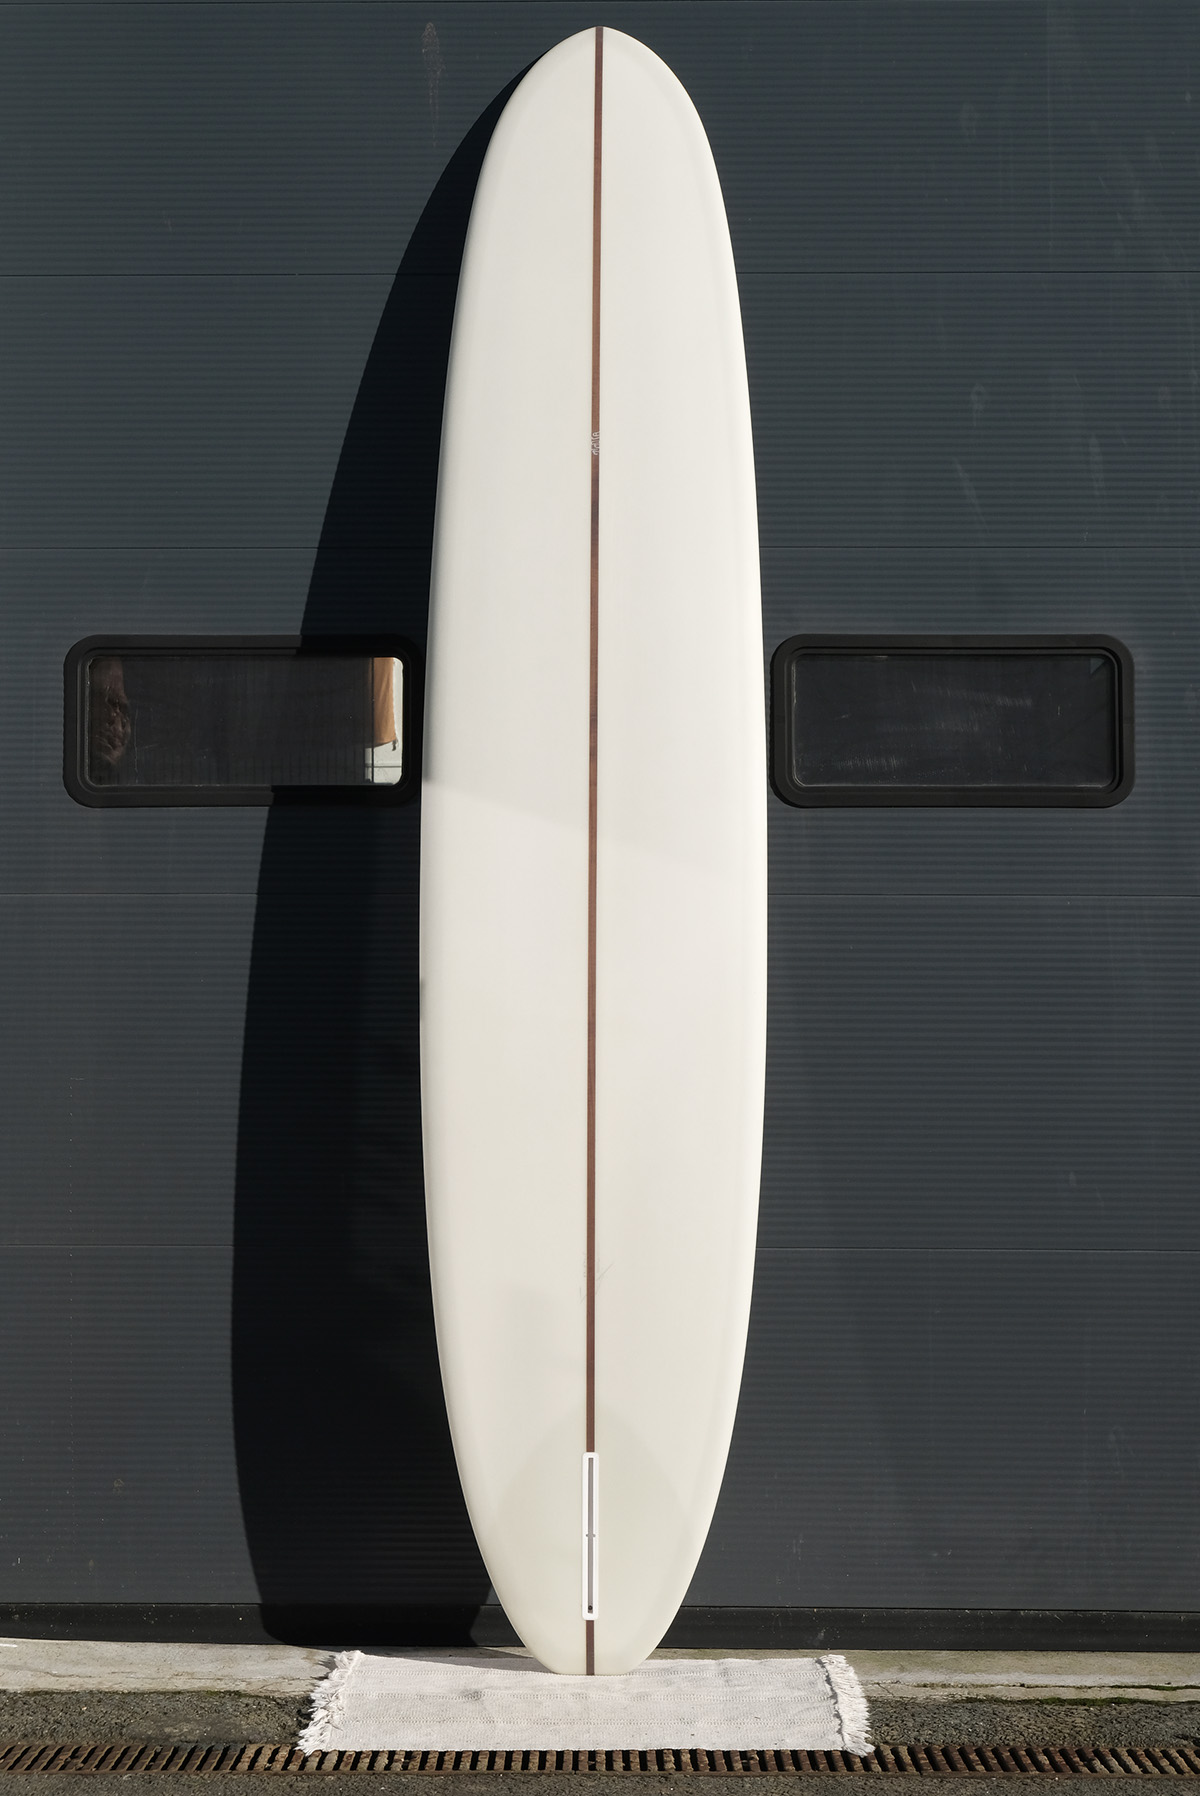 Longboard surfoboard Mimosa 9'4 deck